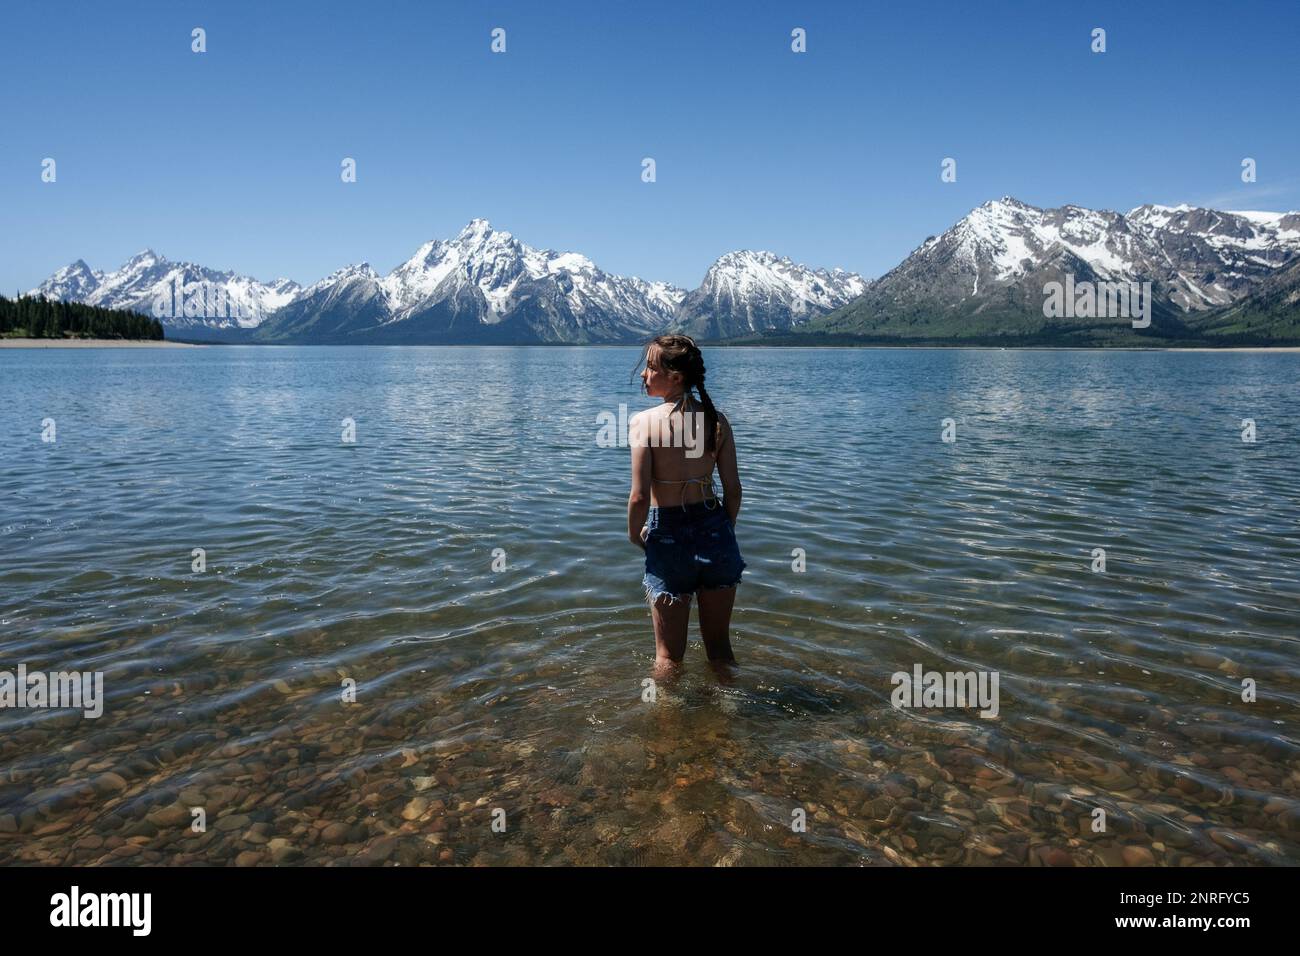 Ein Mädchen betritt den See in der Nähe der schneebedeckten Berge Stockfoto